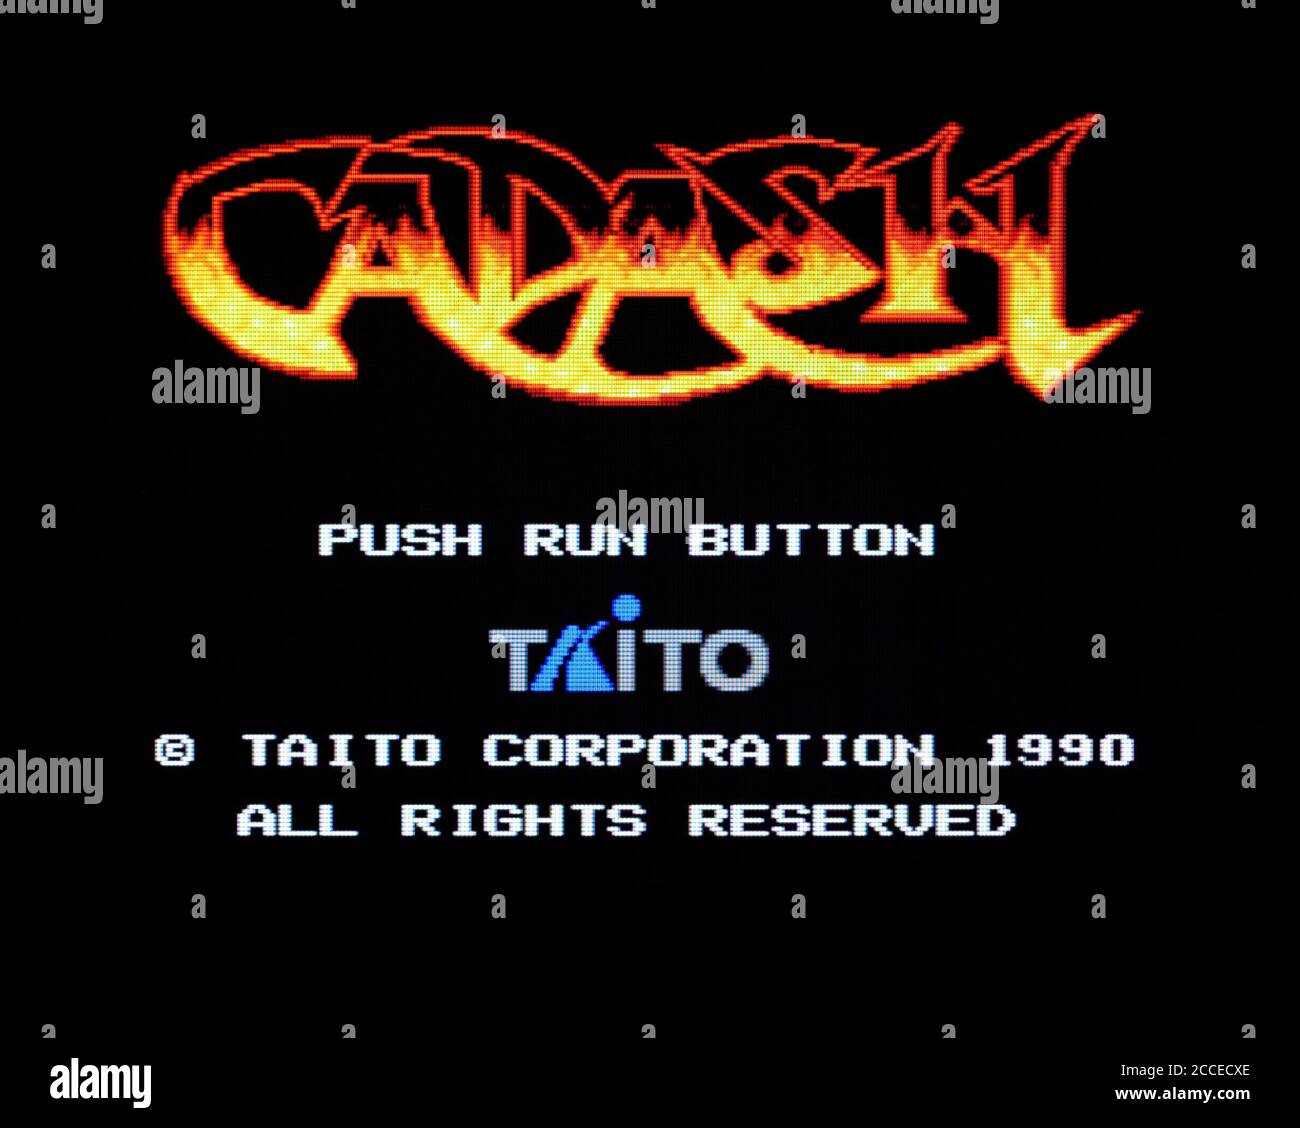 Cadash - PC Engine Videogioco - solo per uso editoriale Foto Stock